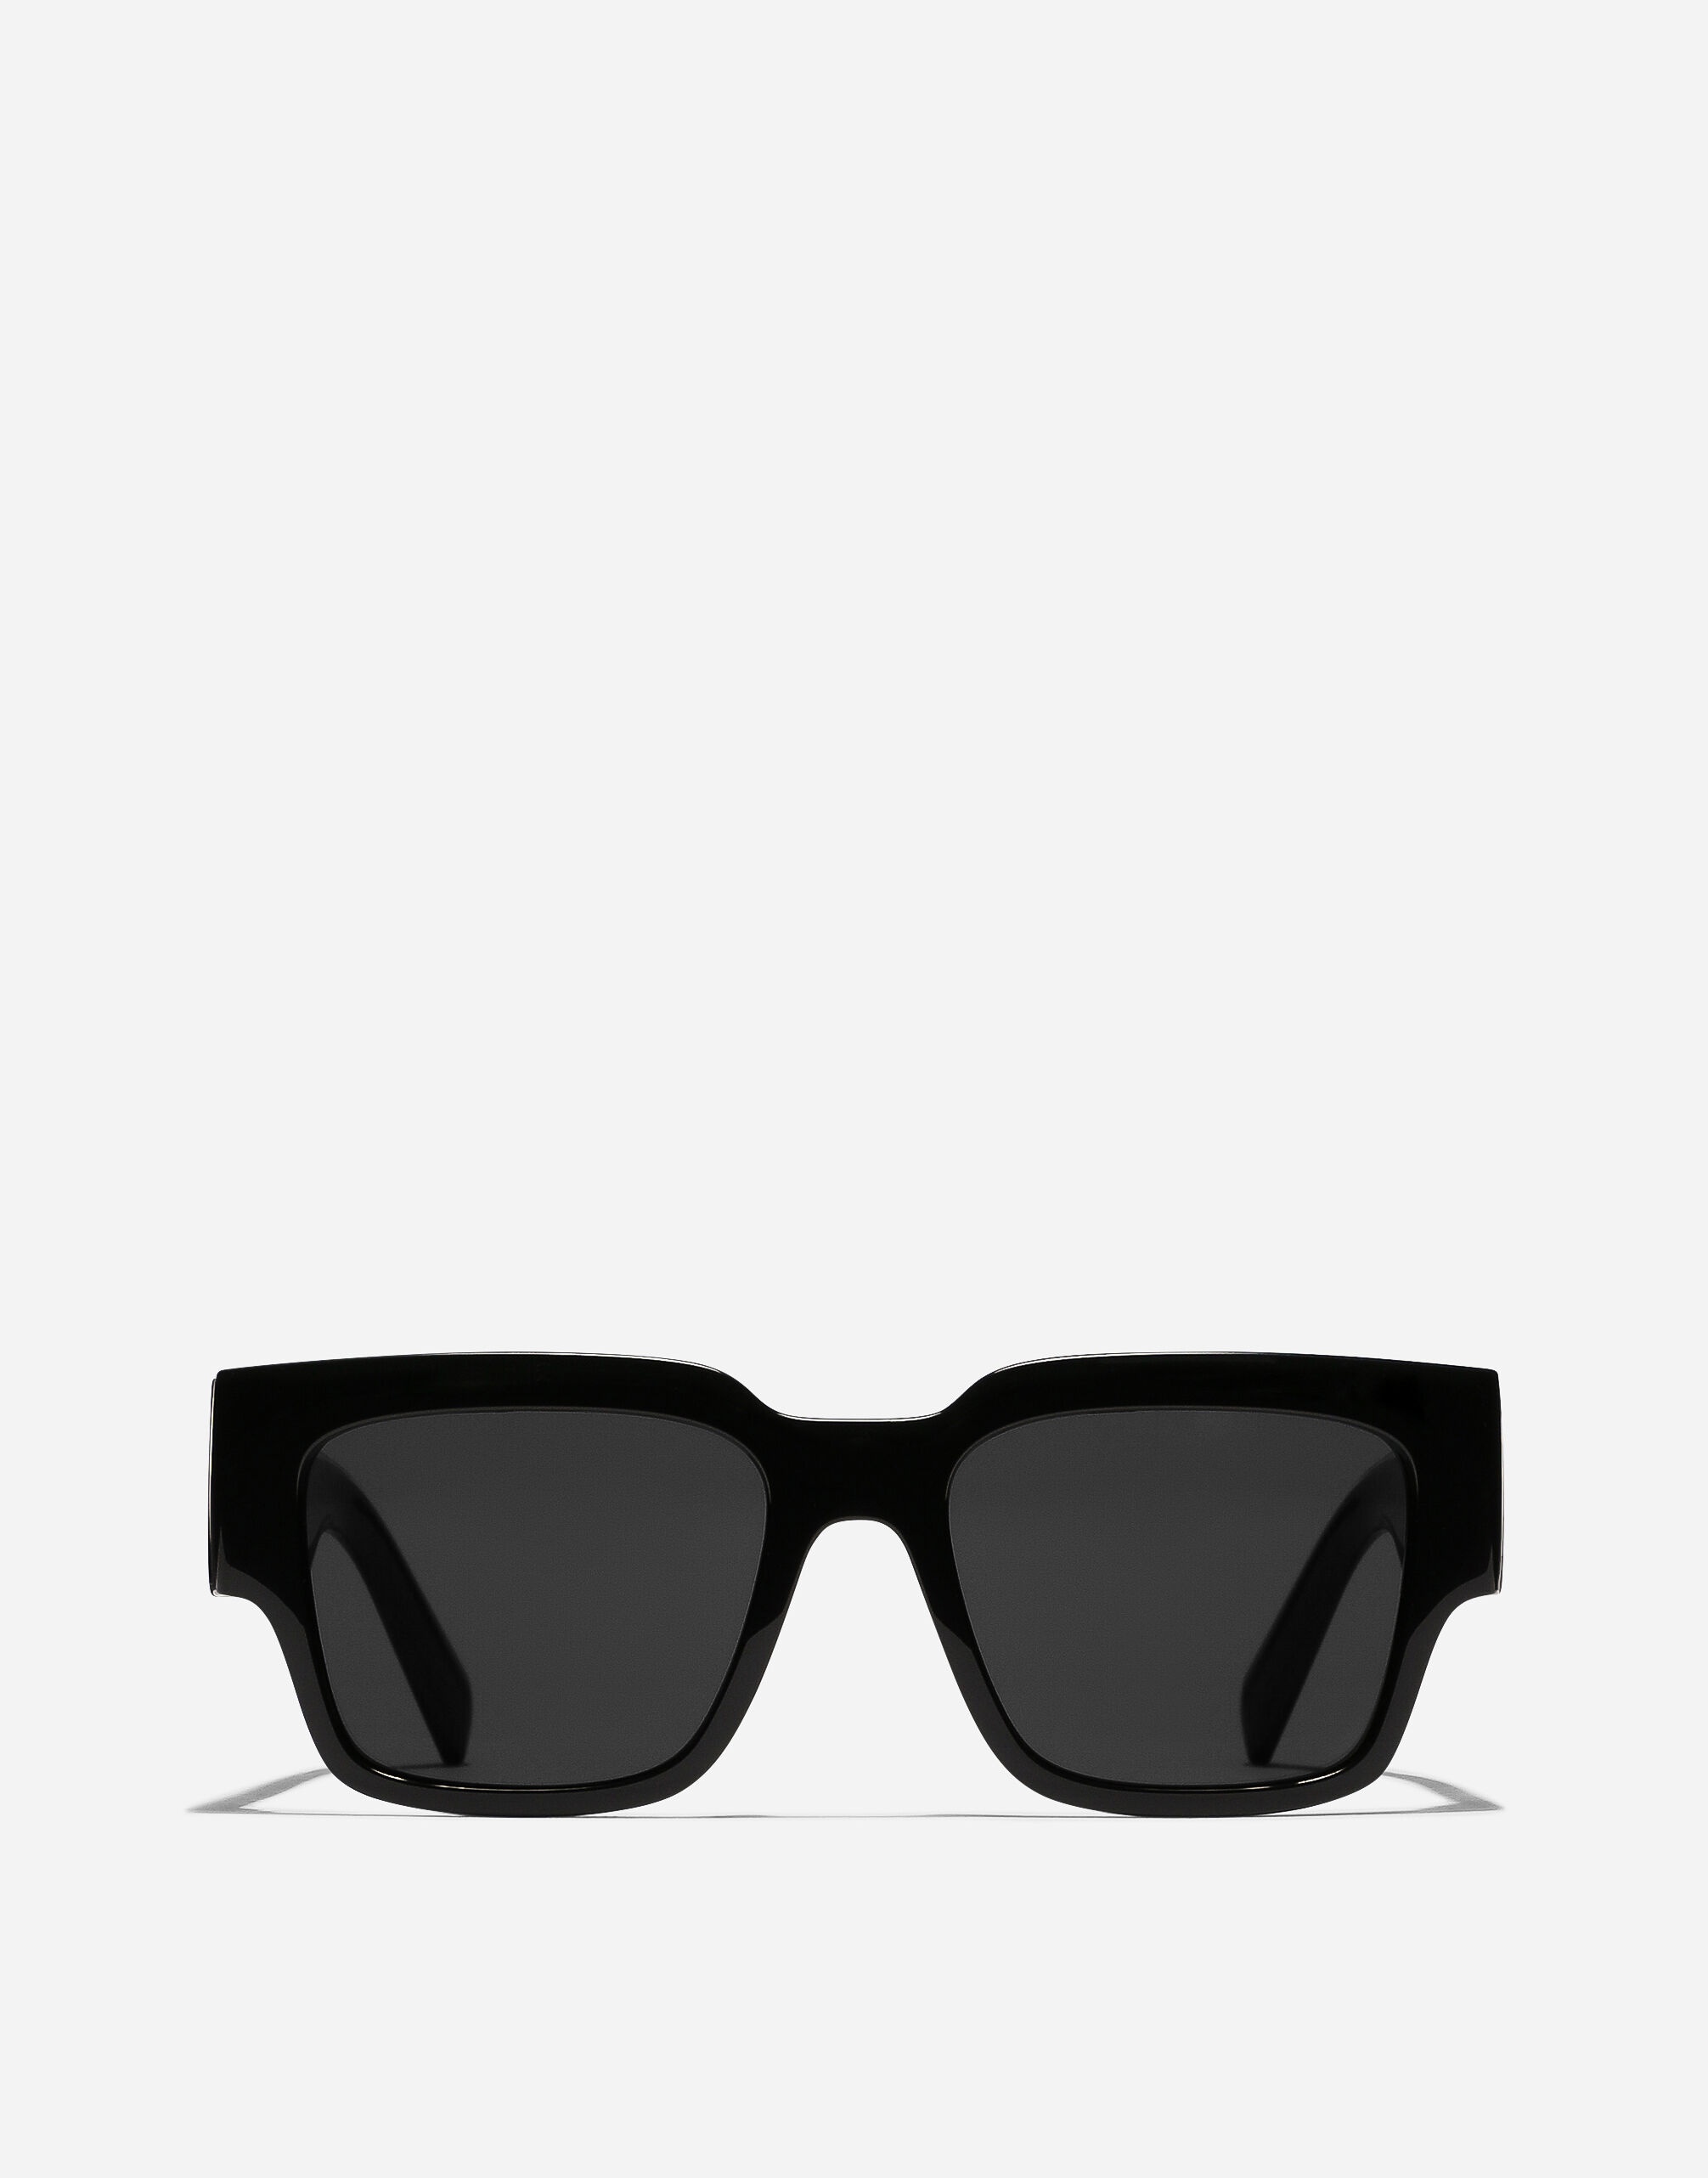 DG Elastic Sunglasses - 1